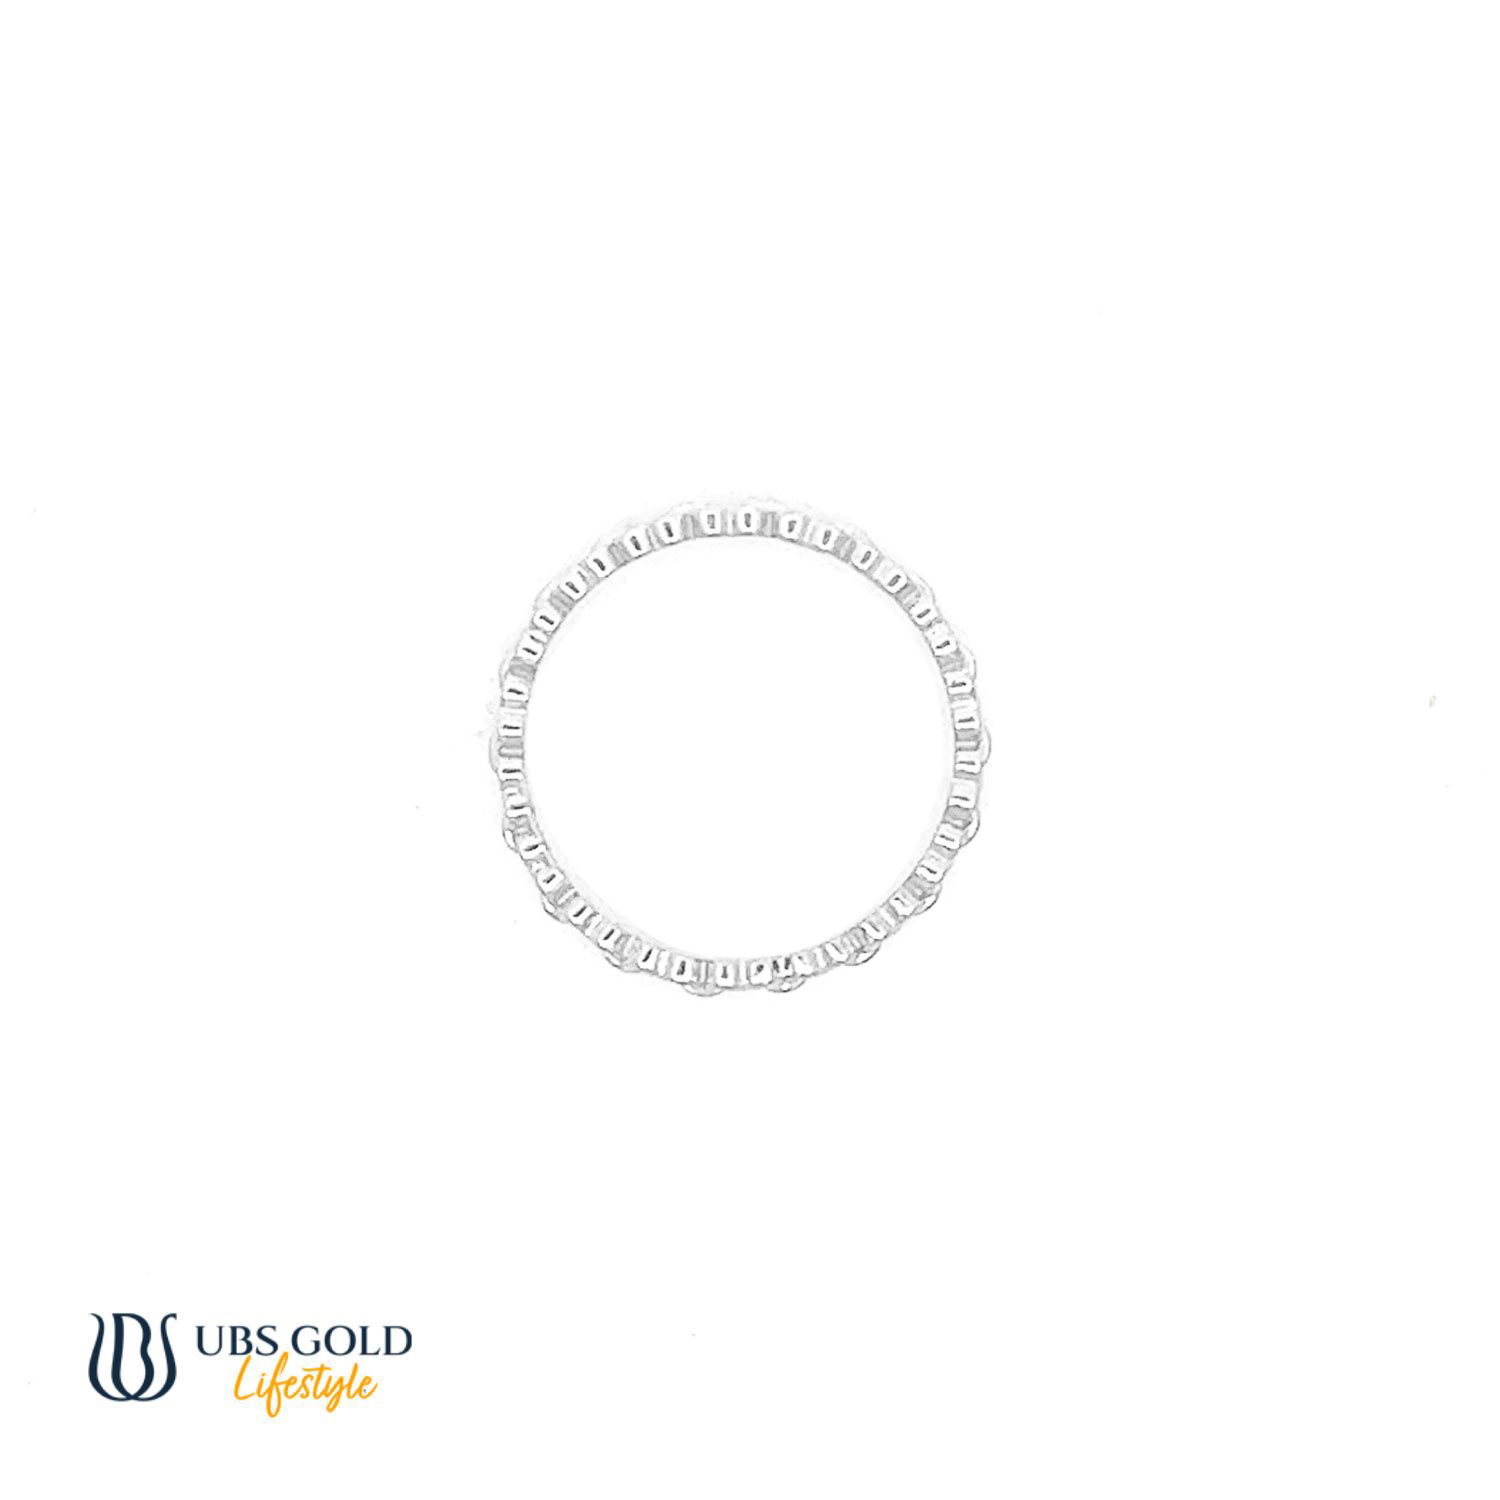 UBS Gold Cincin Emas - Cc70695 - 17K